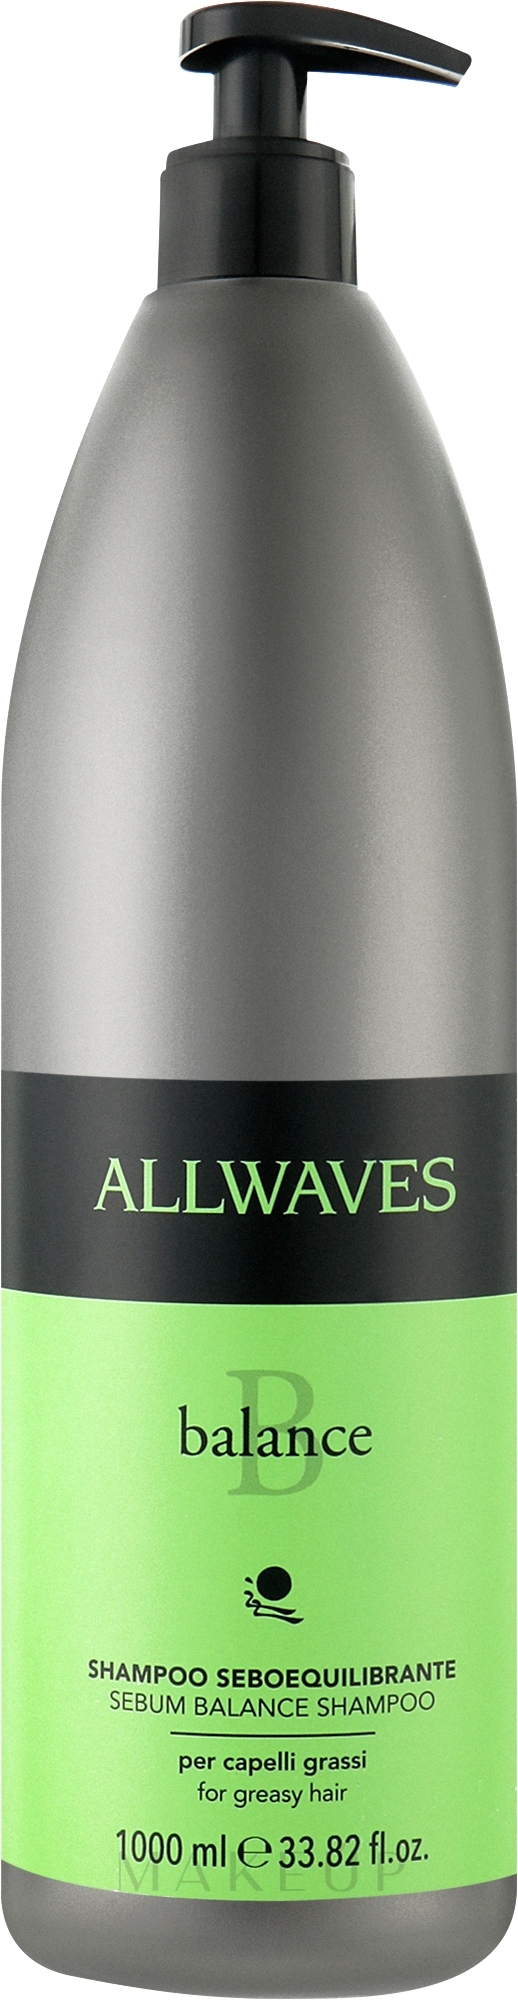 Regulierendes Shampoo für fettiges Haar mit Brennnesselextrakt - Allwaves Balance Sebum Balancing Shampoo — Bild 1000 ml